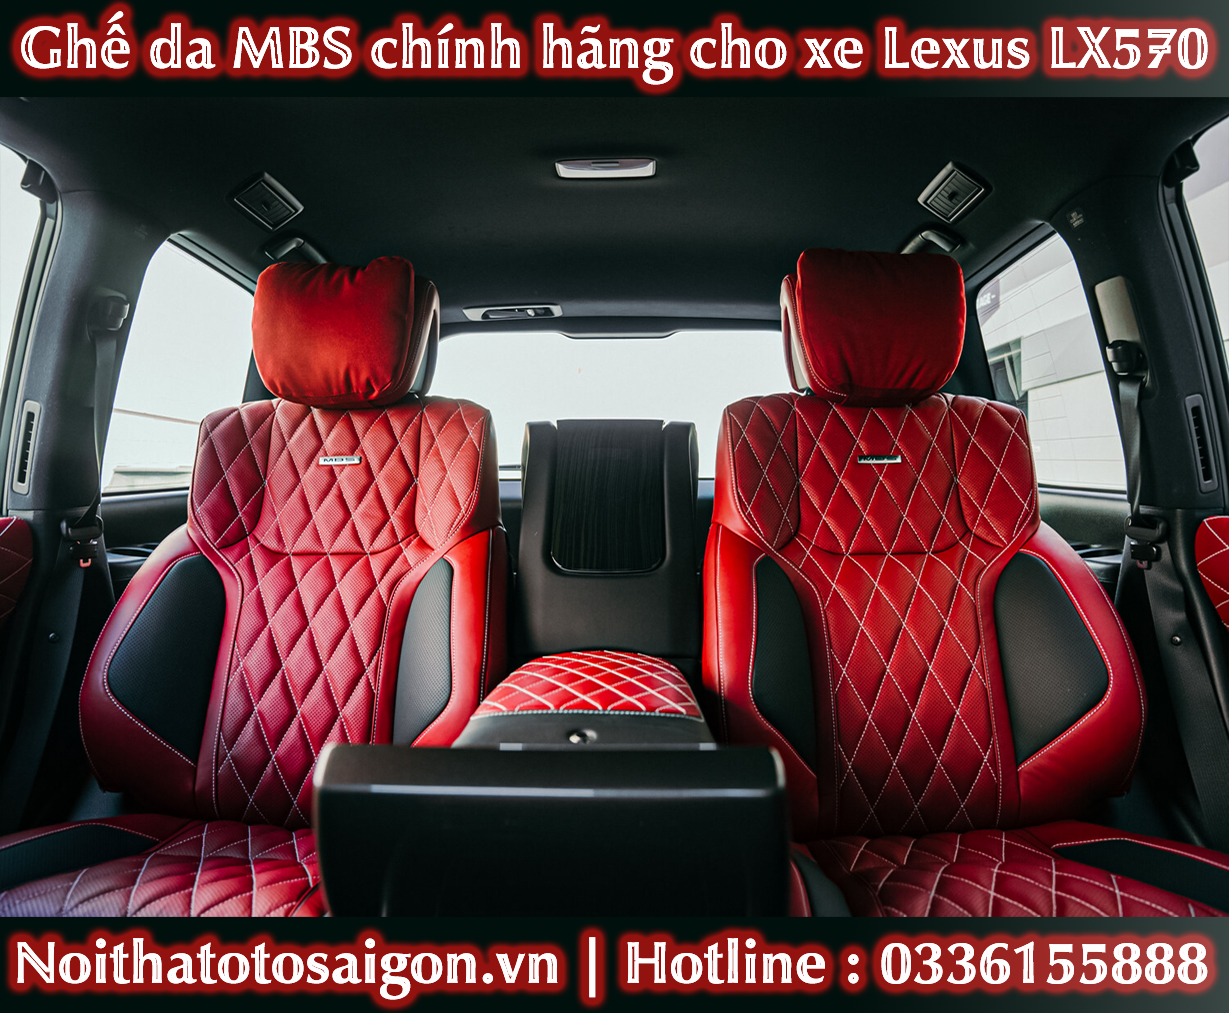 noi-that-mbs-lexus-lx-570